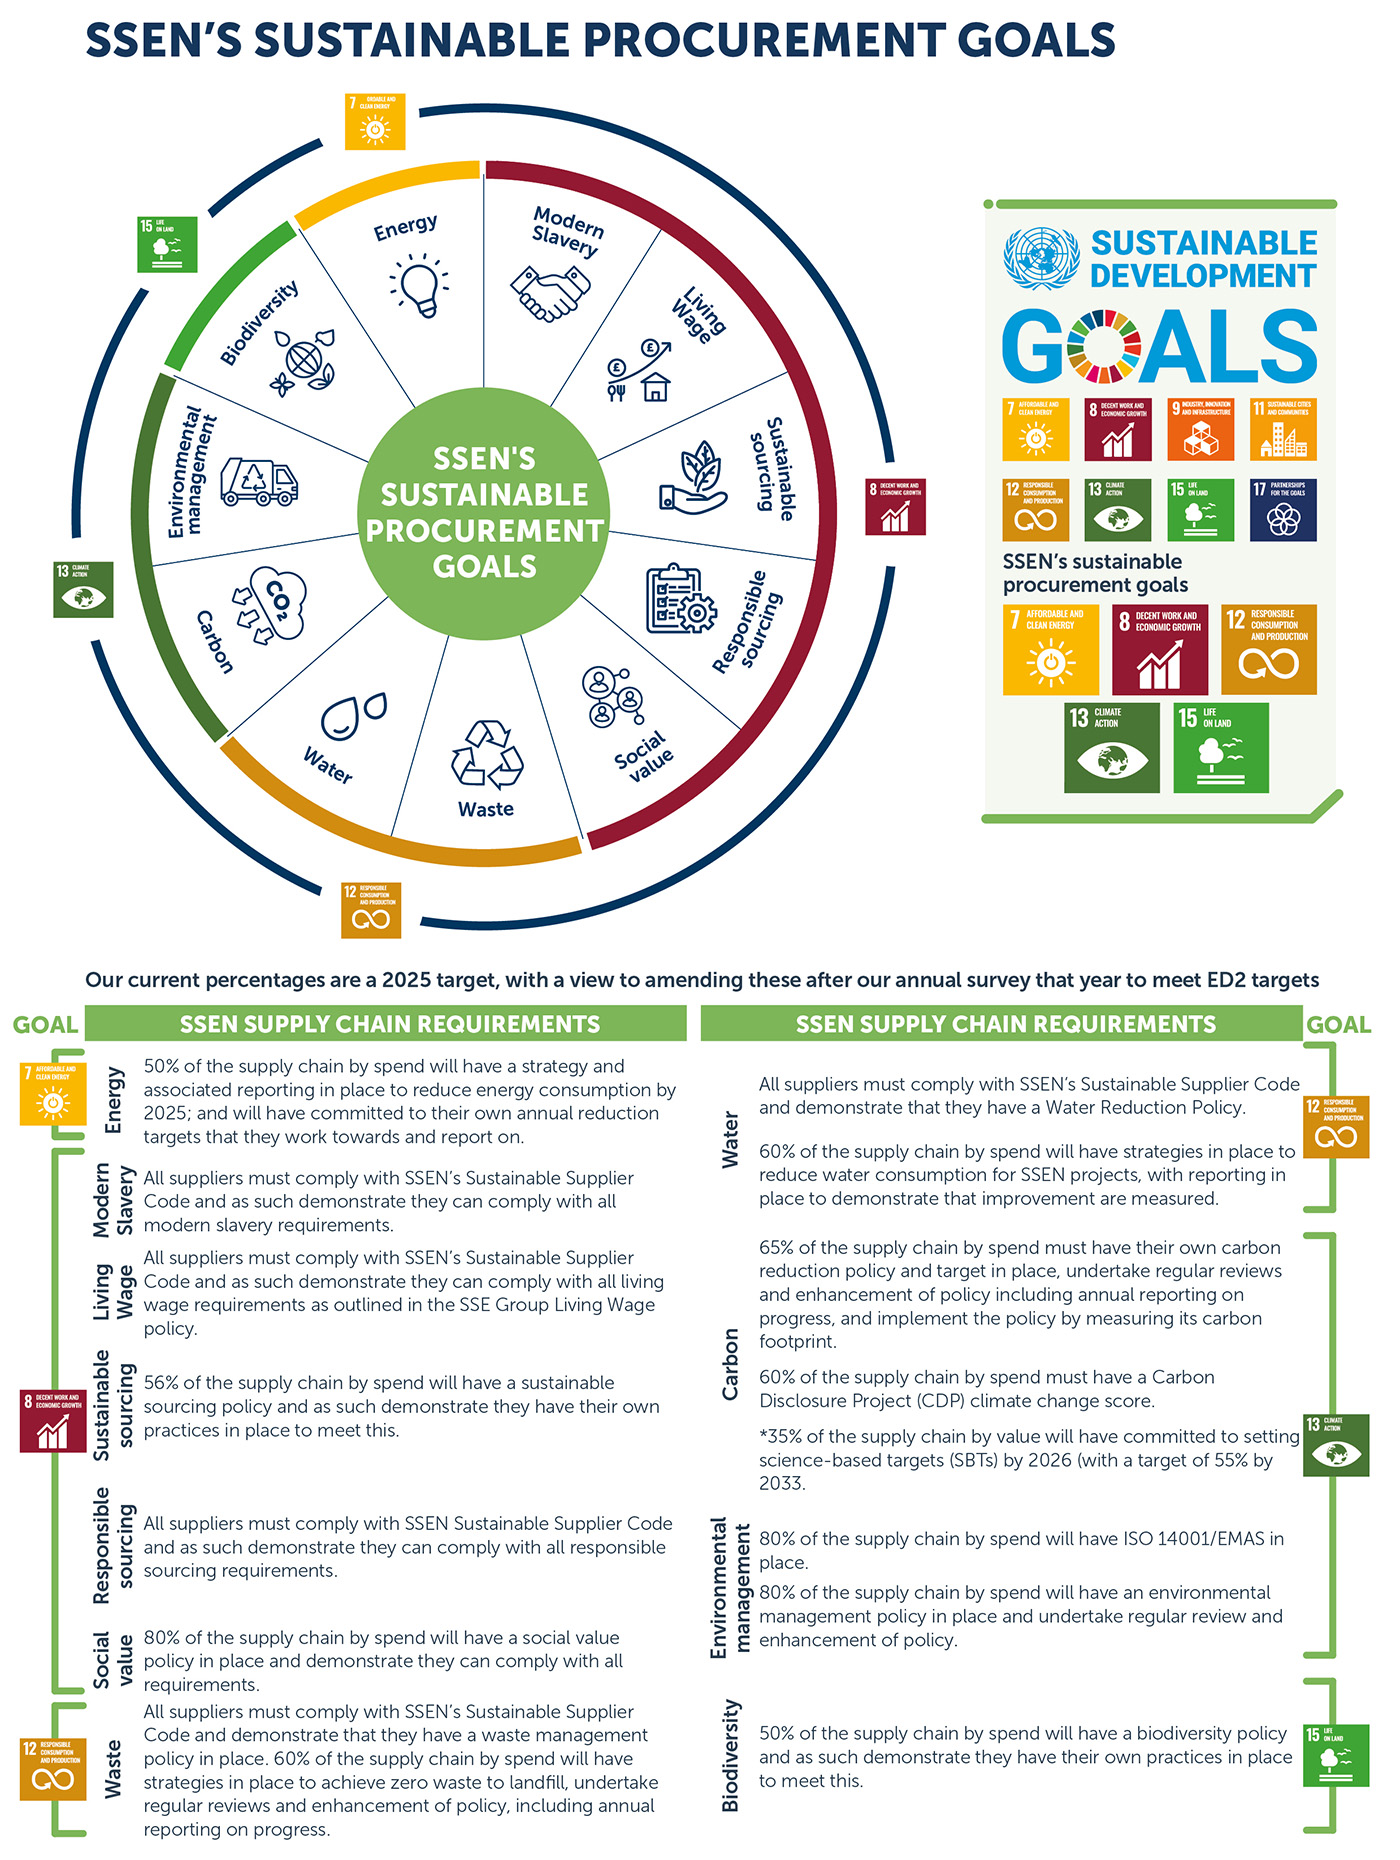 SSEN's Sustainable Procurement Goals image